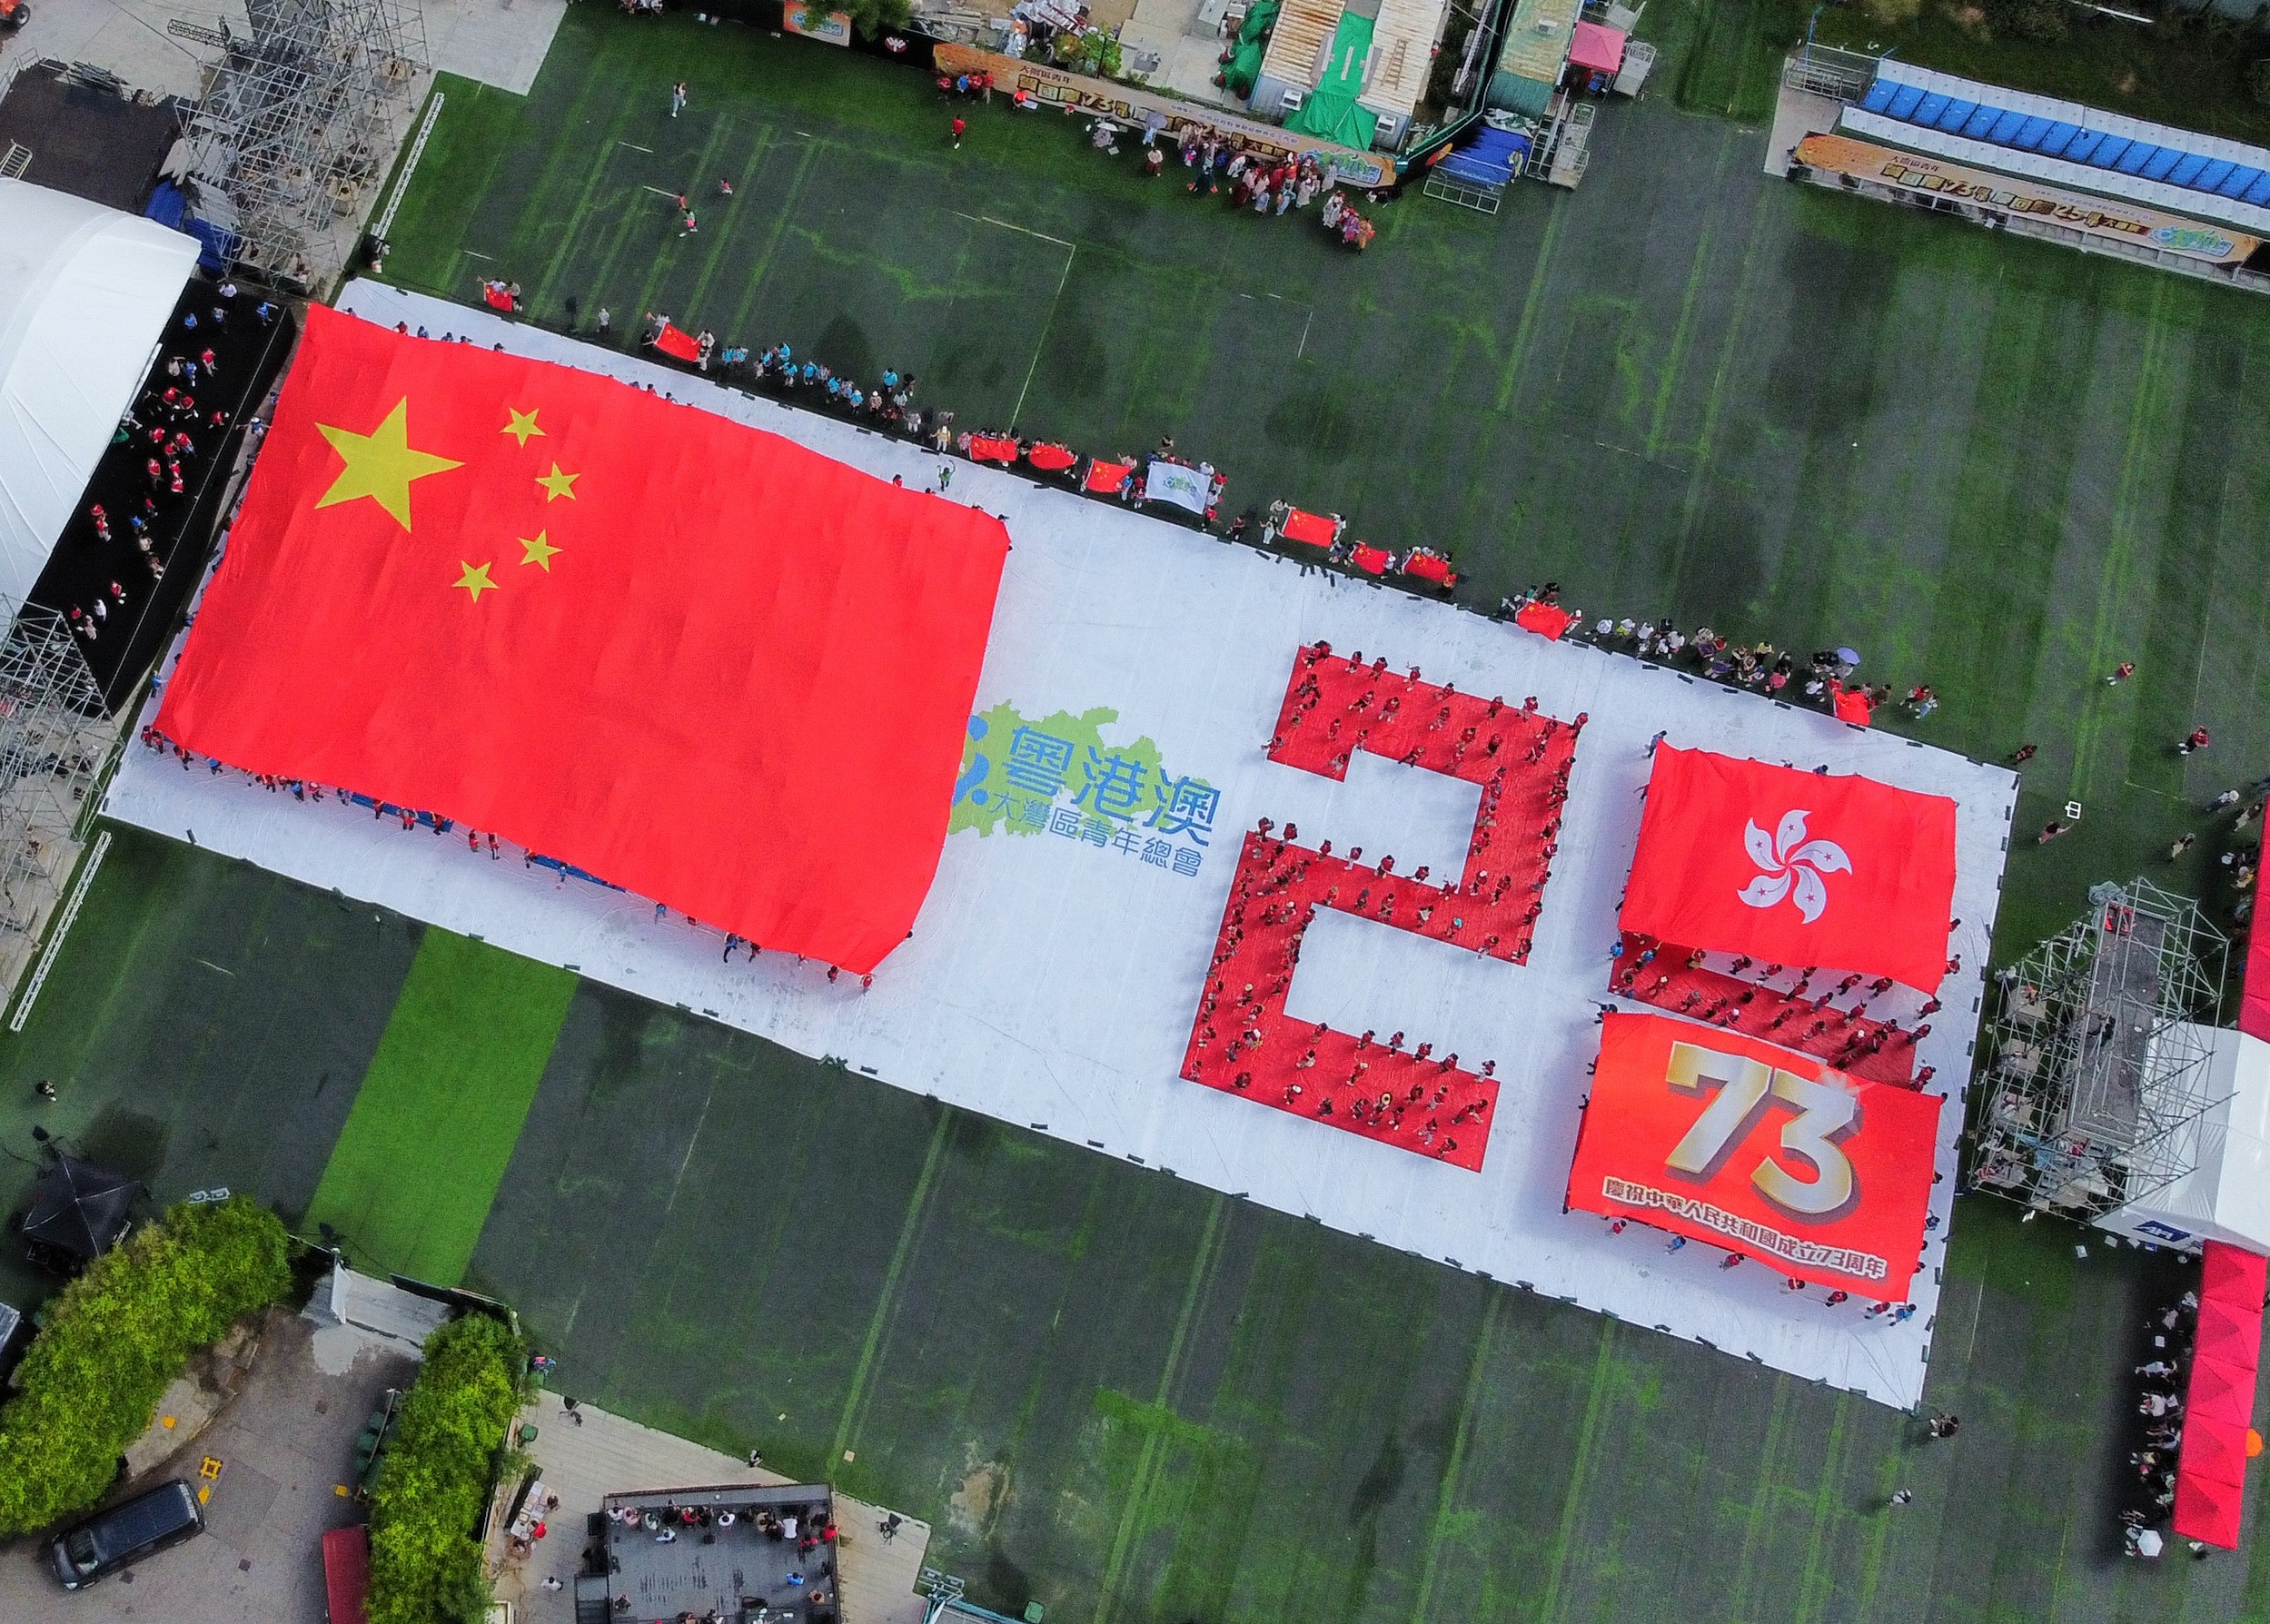 在开场秀，逾百位青年展示一幅巨型五星红旗、紫荆花旗和73周年旗帜，并拼出“HK25”字样的方阵。